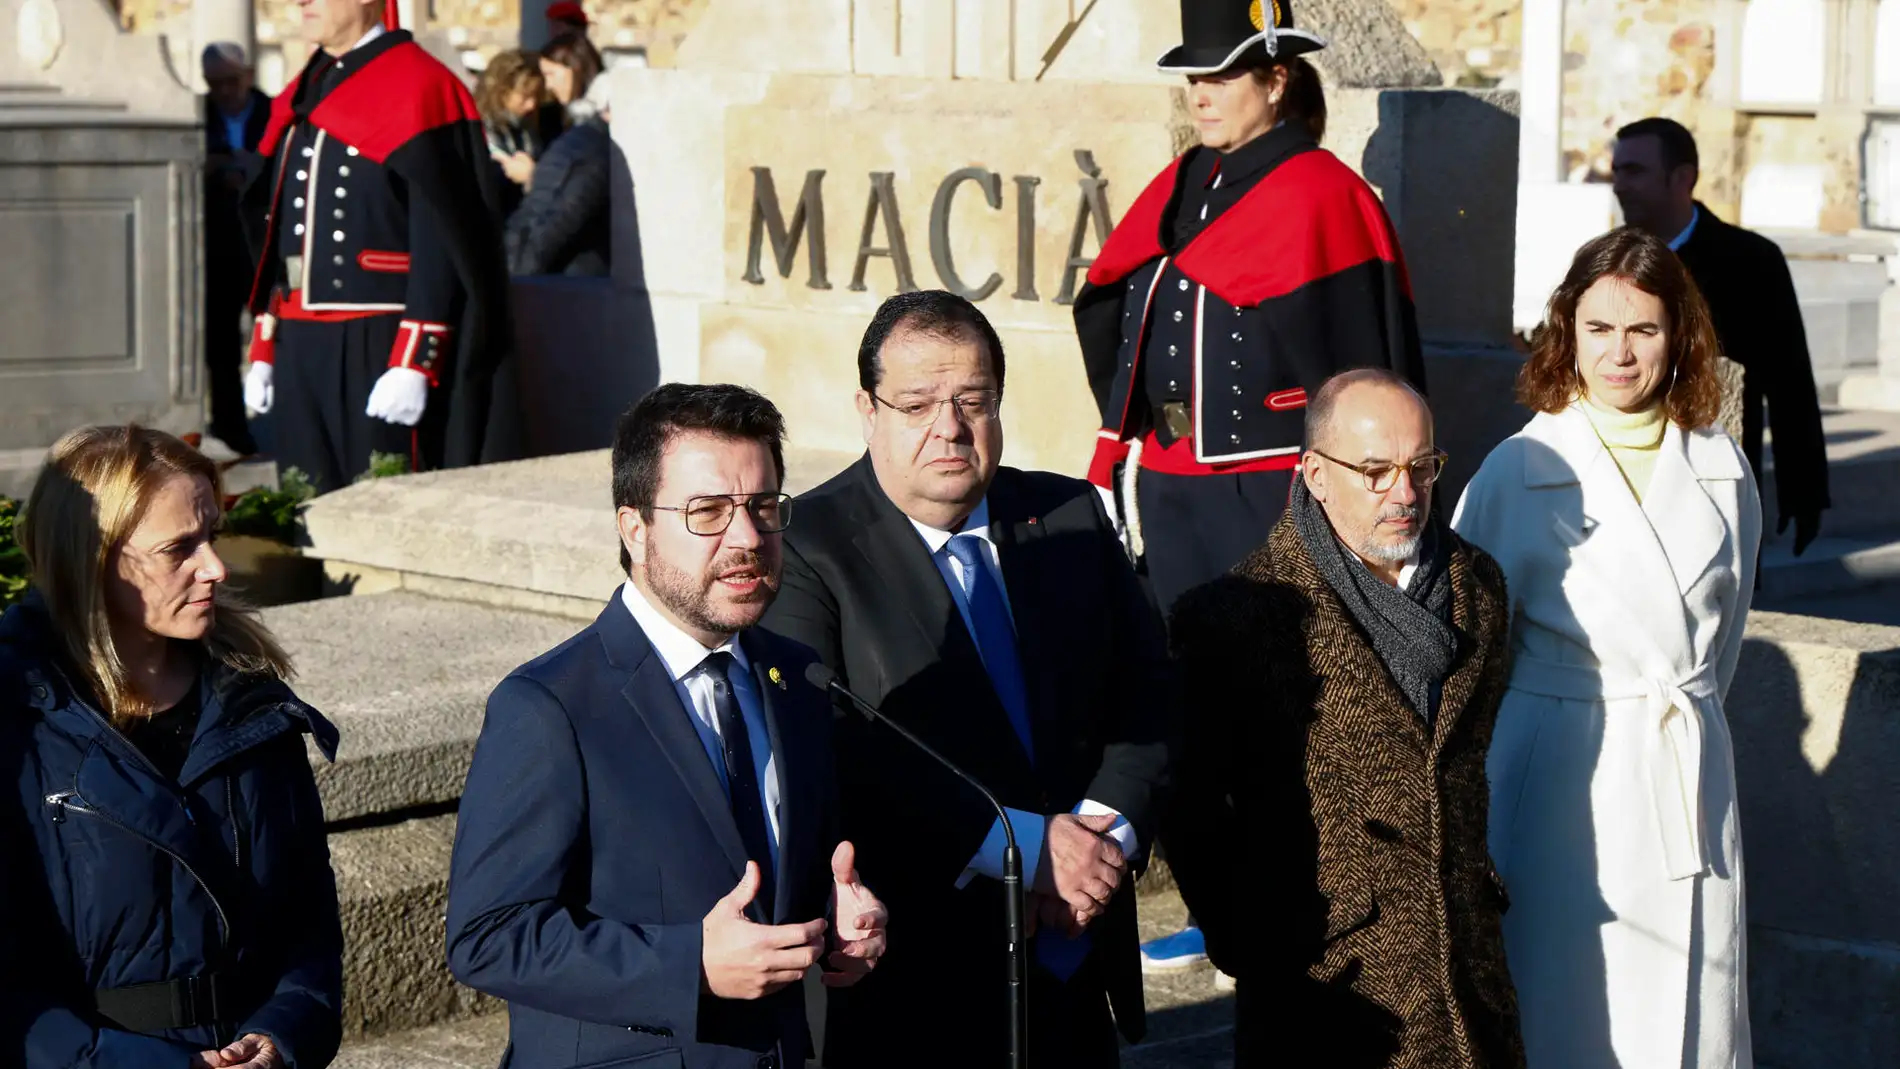 Aragonés señala que el discurso de Felipe VI fue "nacionalista español" y no representa a Cataluña